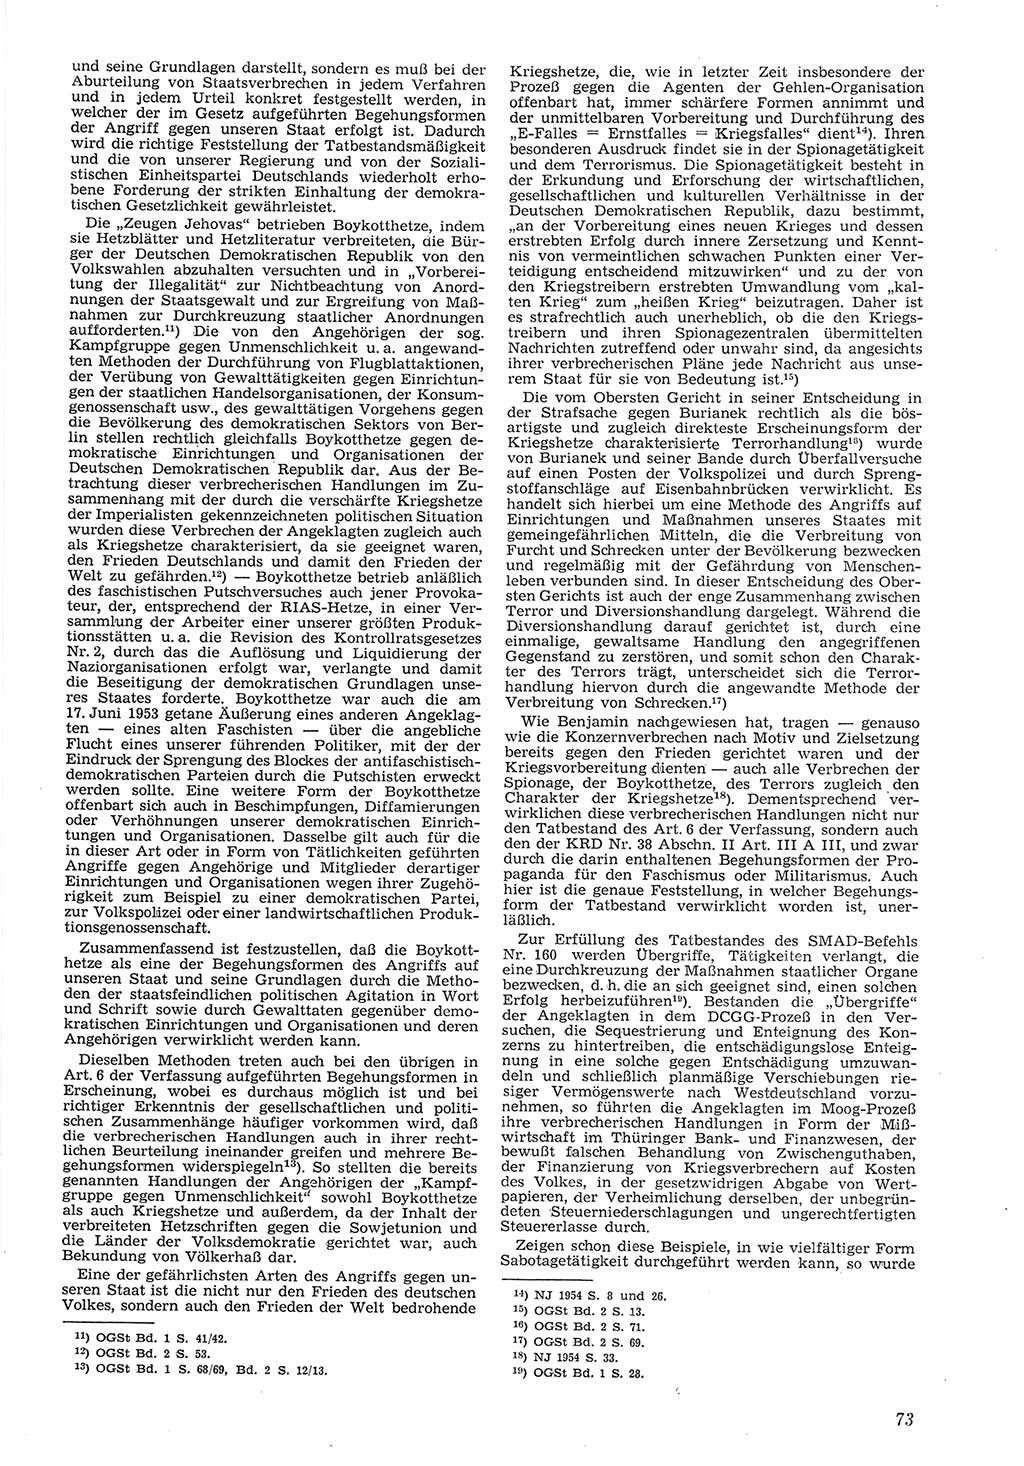 Neue Justiz (NJ), Zeitschrift für Recht und Rechtswissenschaft [Deutsche Demokratische Republik (DDR)], 8. Jahrgang 1954, Seite 73 (NJ DDR 1954, S. 73)